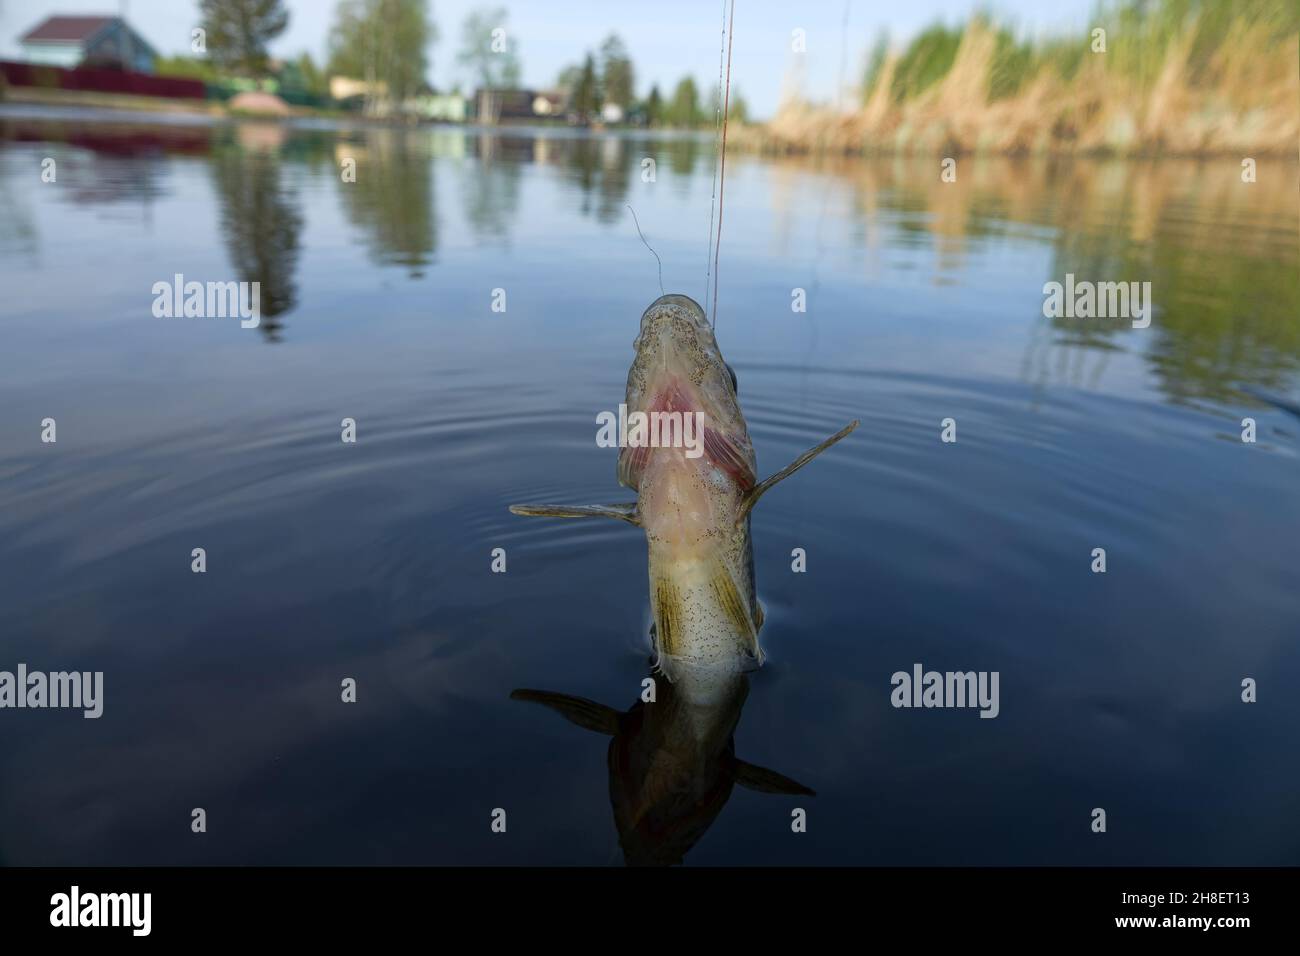 Fischfang mit Angelschnur für die Grundfischerei im Dorf am kleinen nördlichen Fluss im Frühjahr - Sportfischen. Eurasisches Rufffischen. Pho Stockfoto